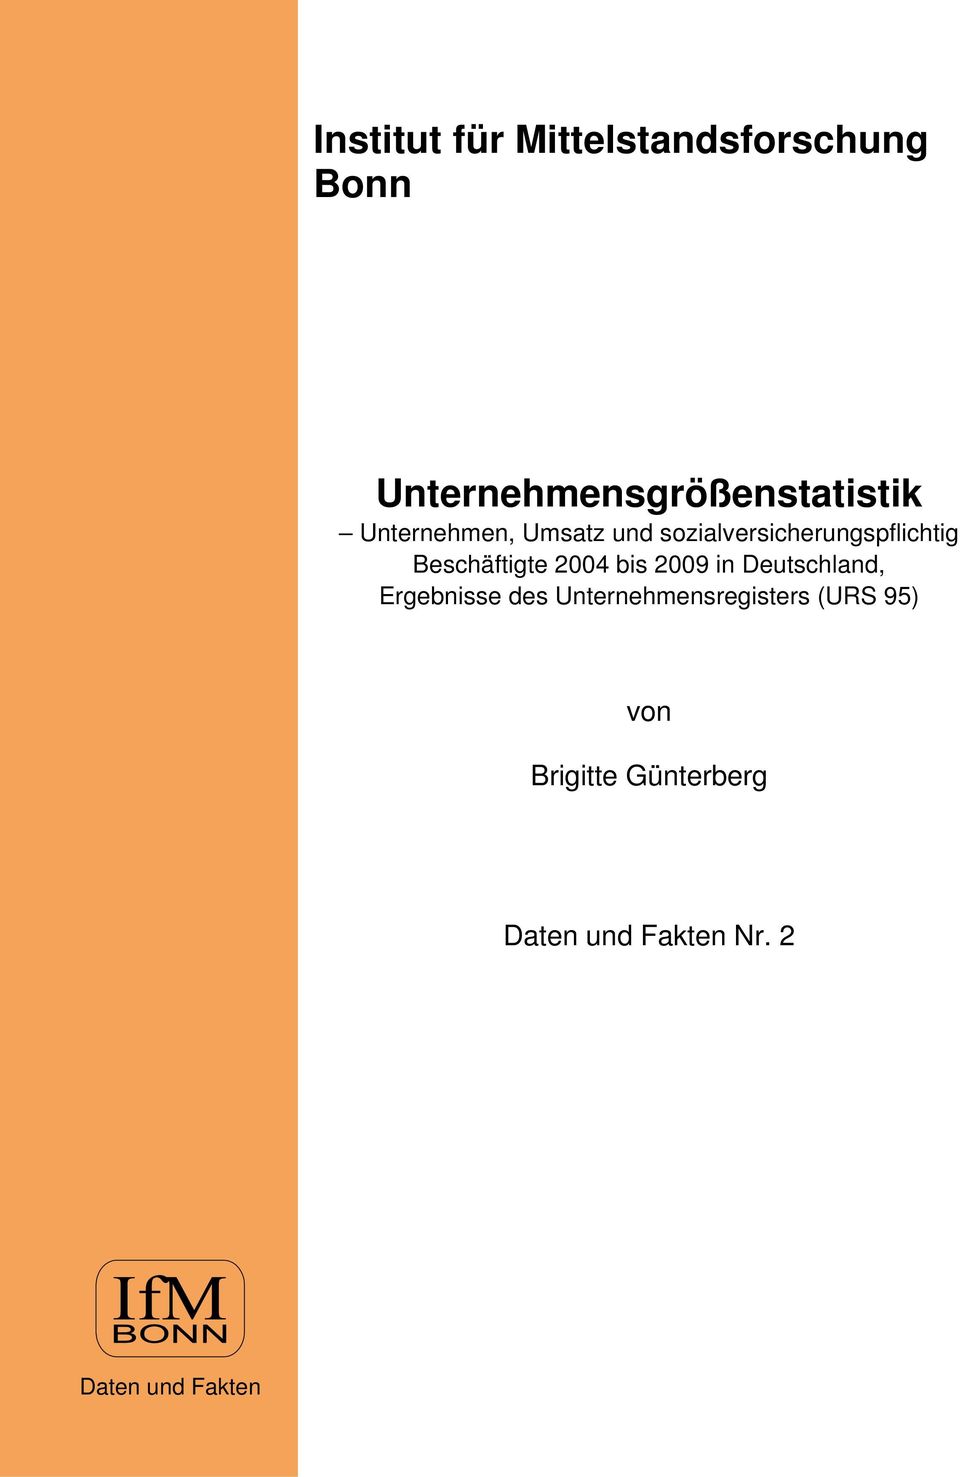 2004 bis 2009 in Deutschland, Ergebnisse des Unternehmensregisters